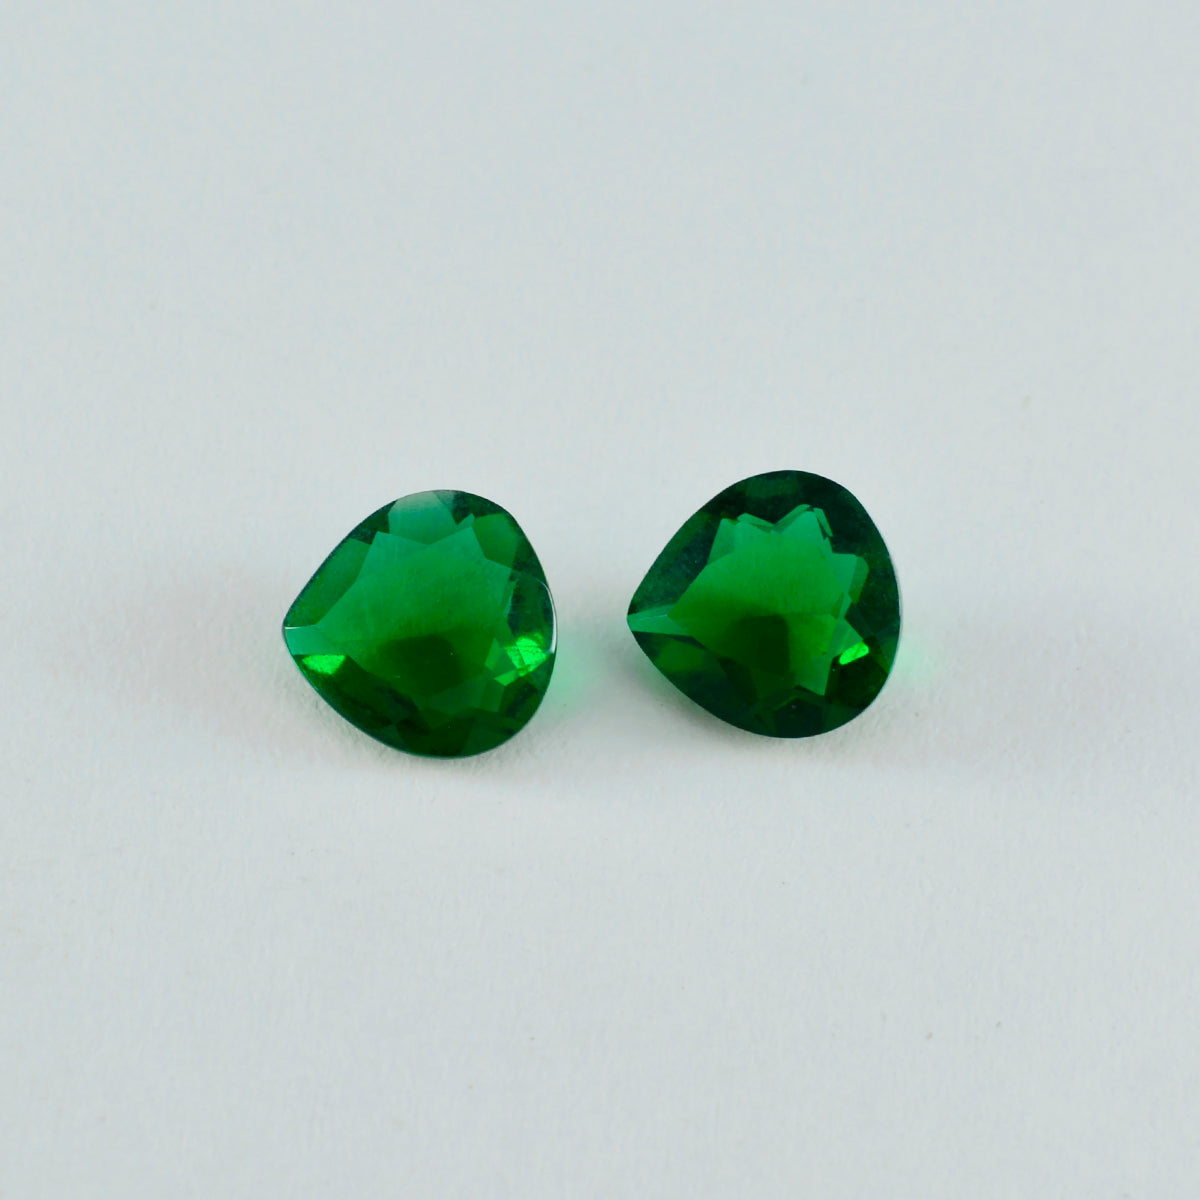 riyogems 1pc グリーン エメラルド CZ ファセット 7x7 mm ハート形の素敵な品質の宝石